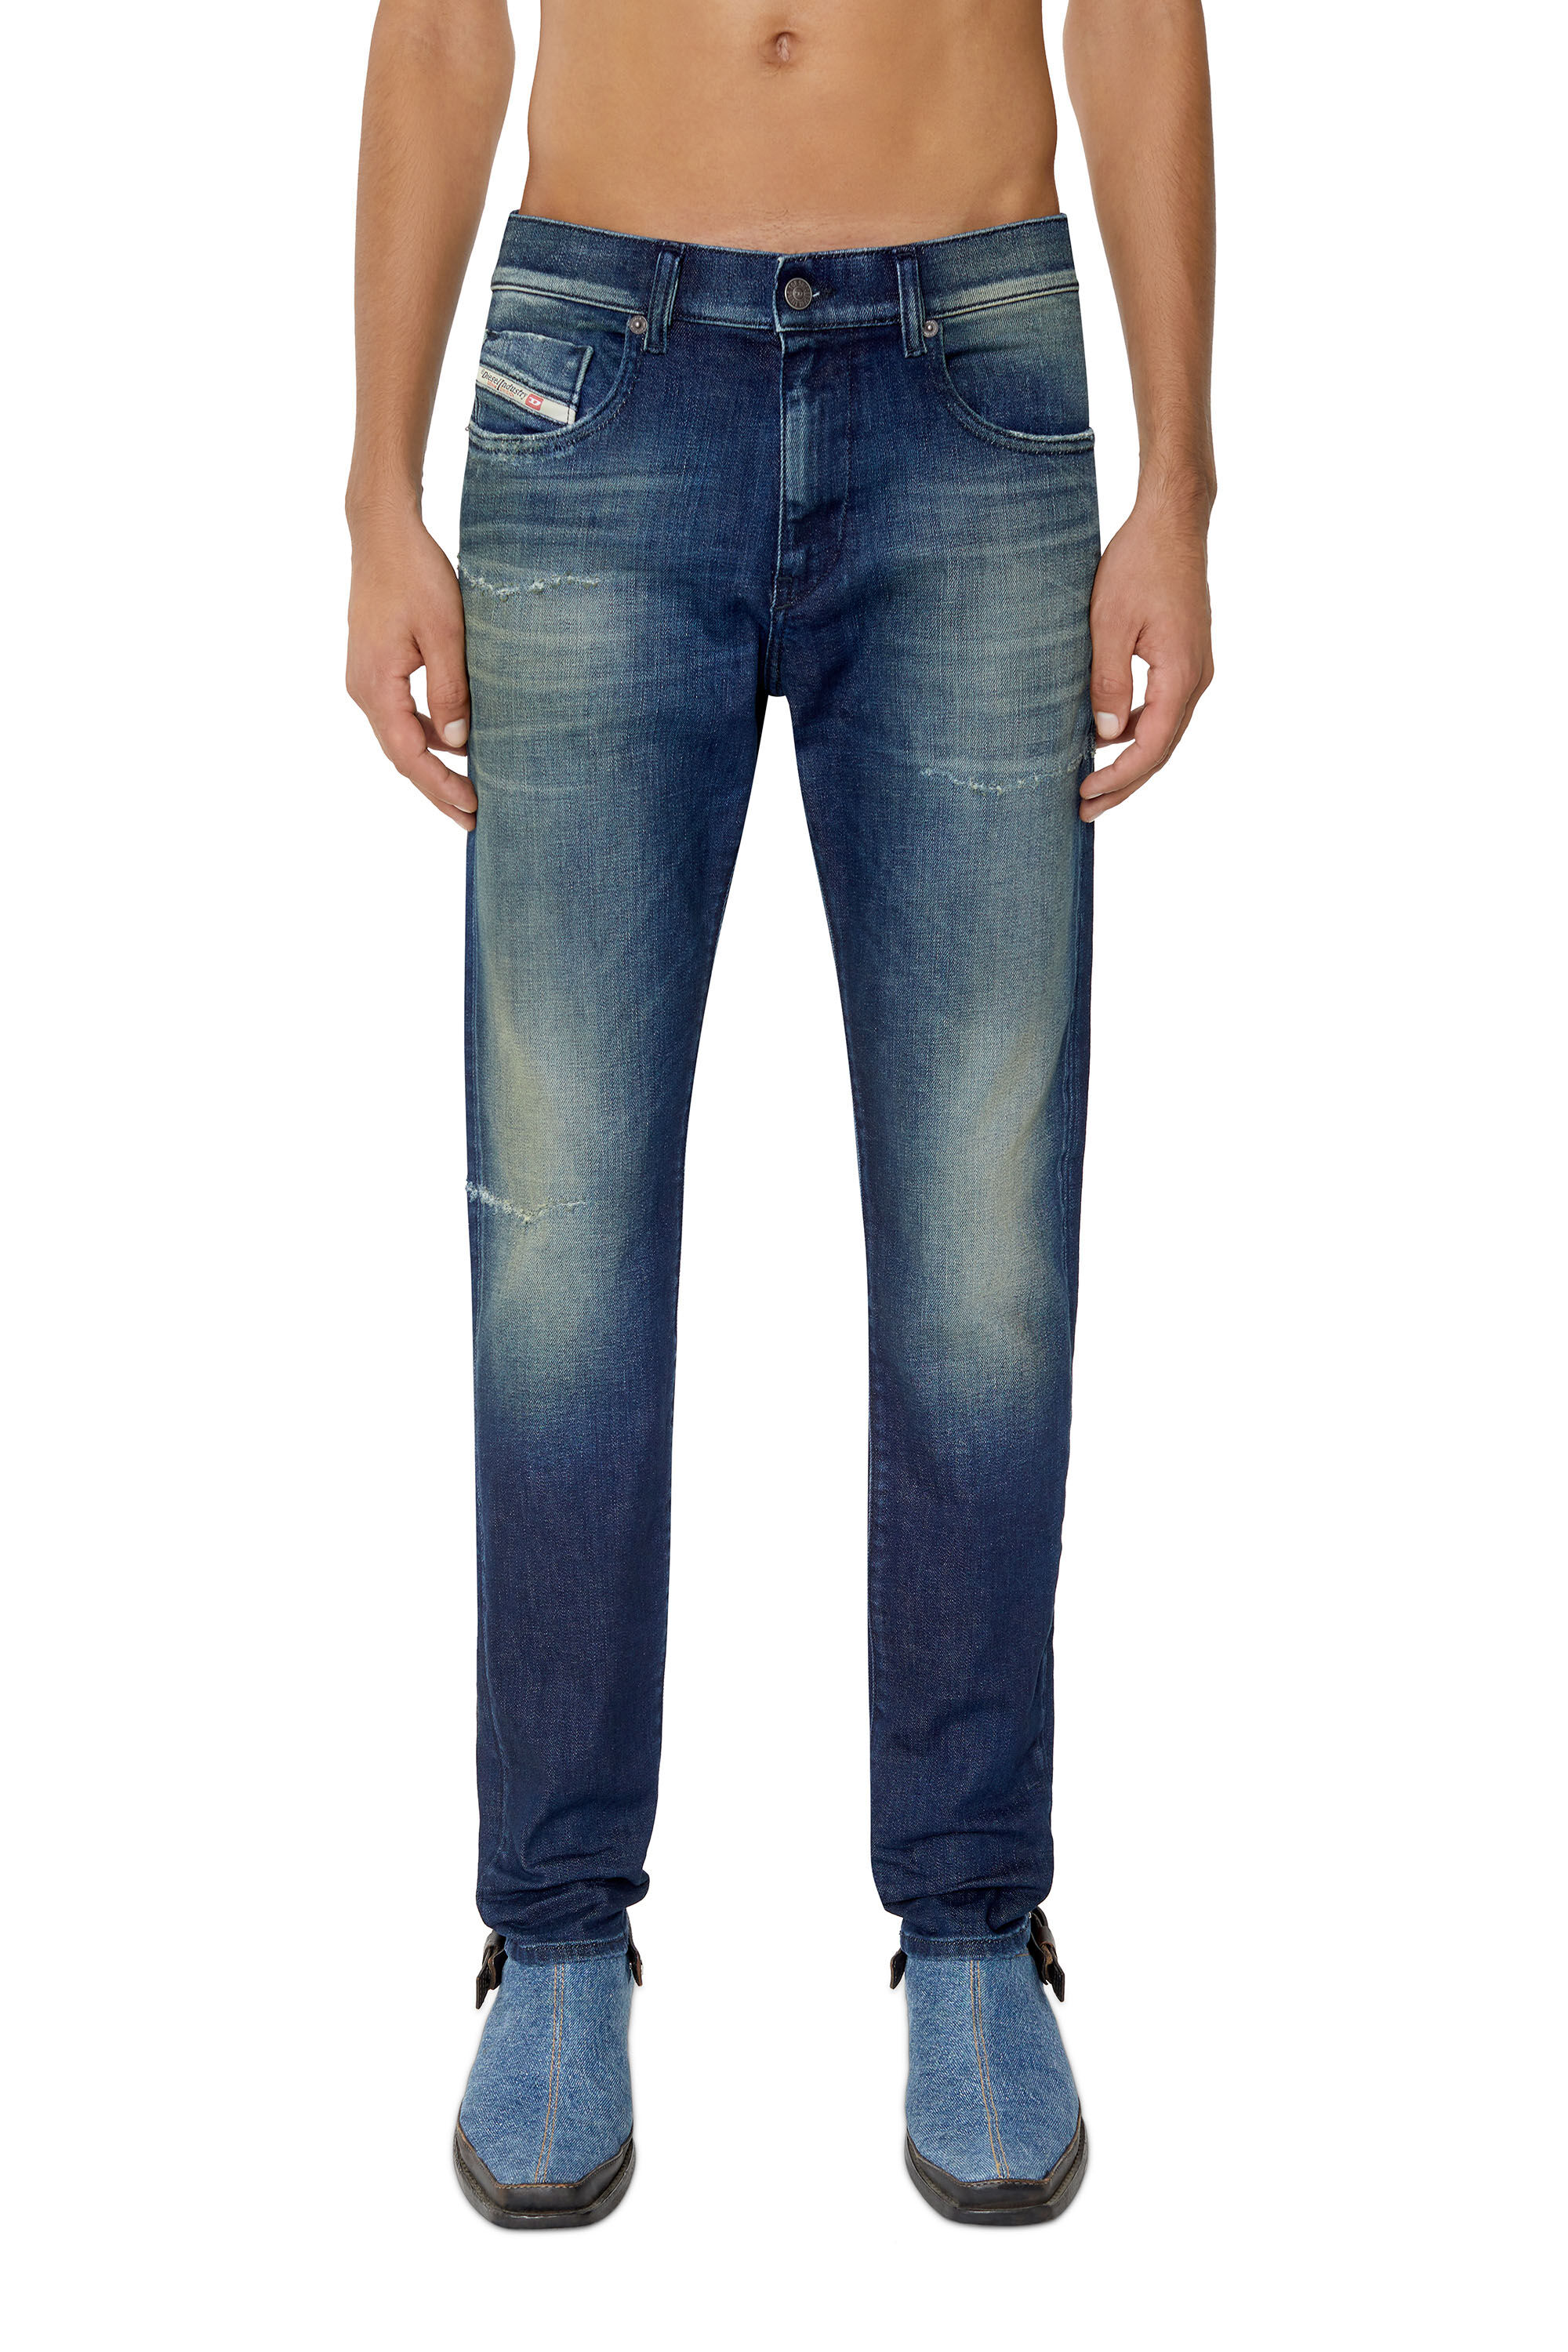 Diesel - Slim Jeans 2019 D-Strukt 09F57,  - Image 3